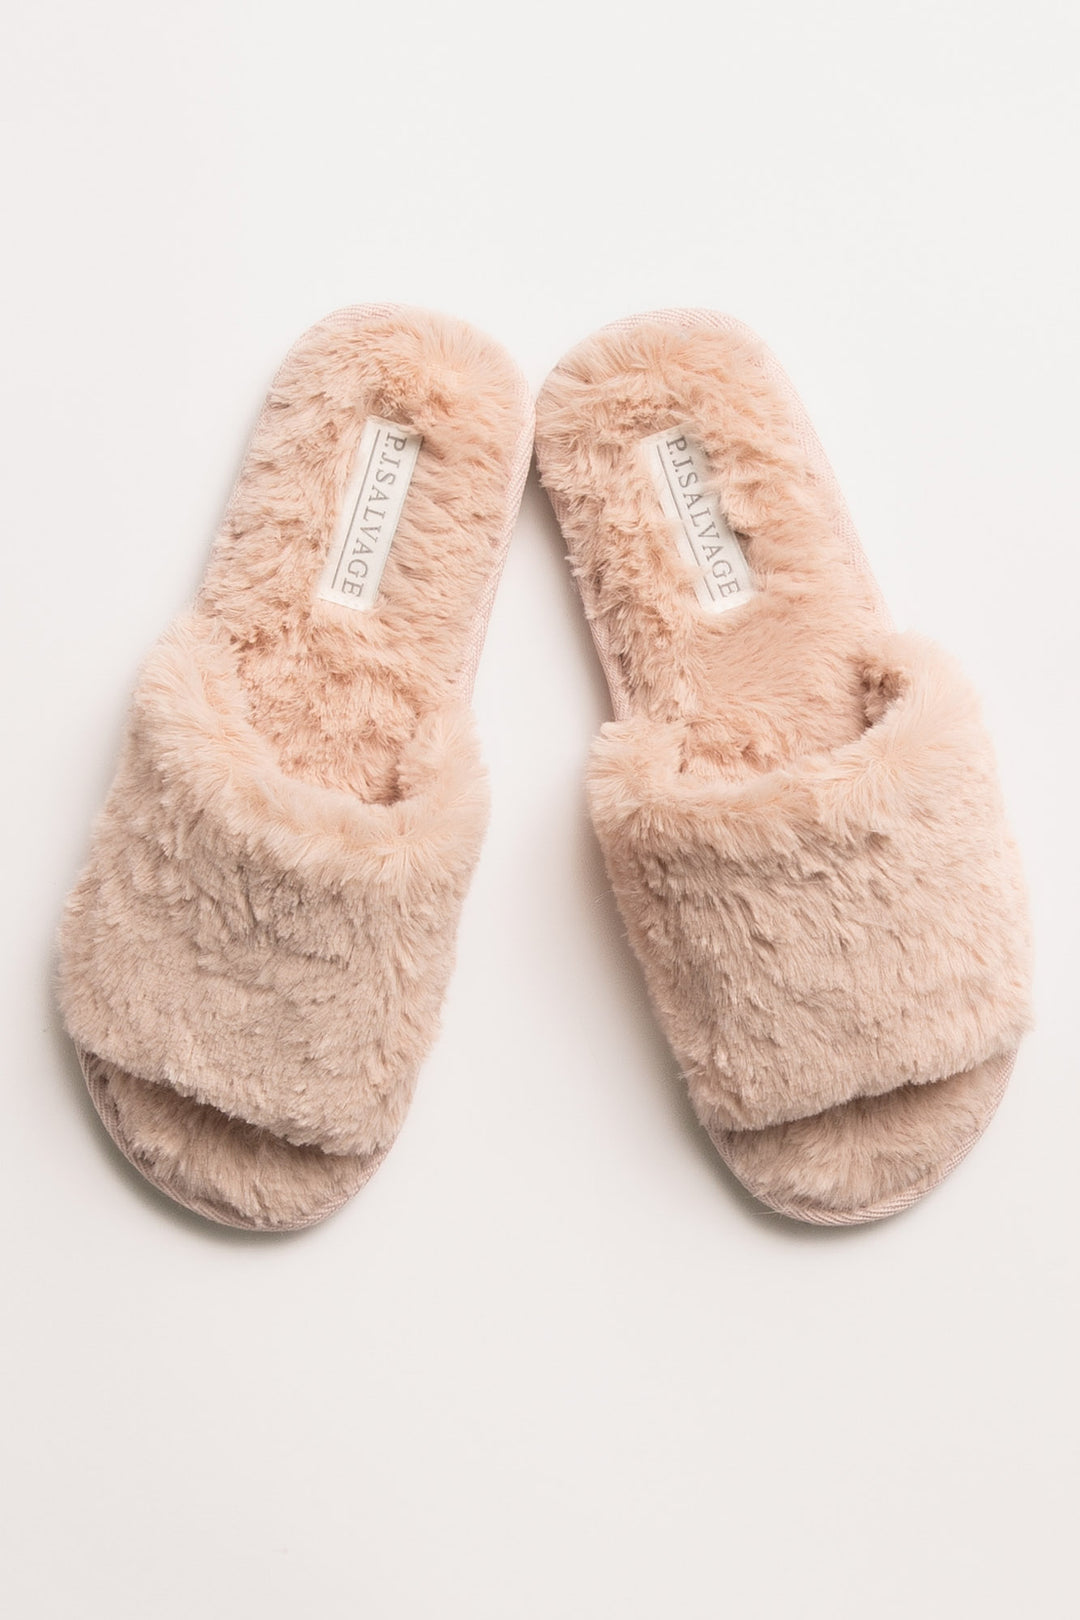 Faux fur slipper in pale pink. Open toe & molded outsole. (7231876694116)